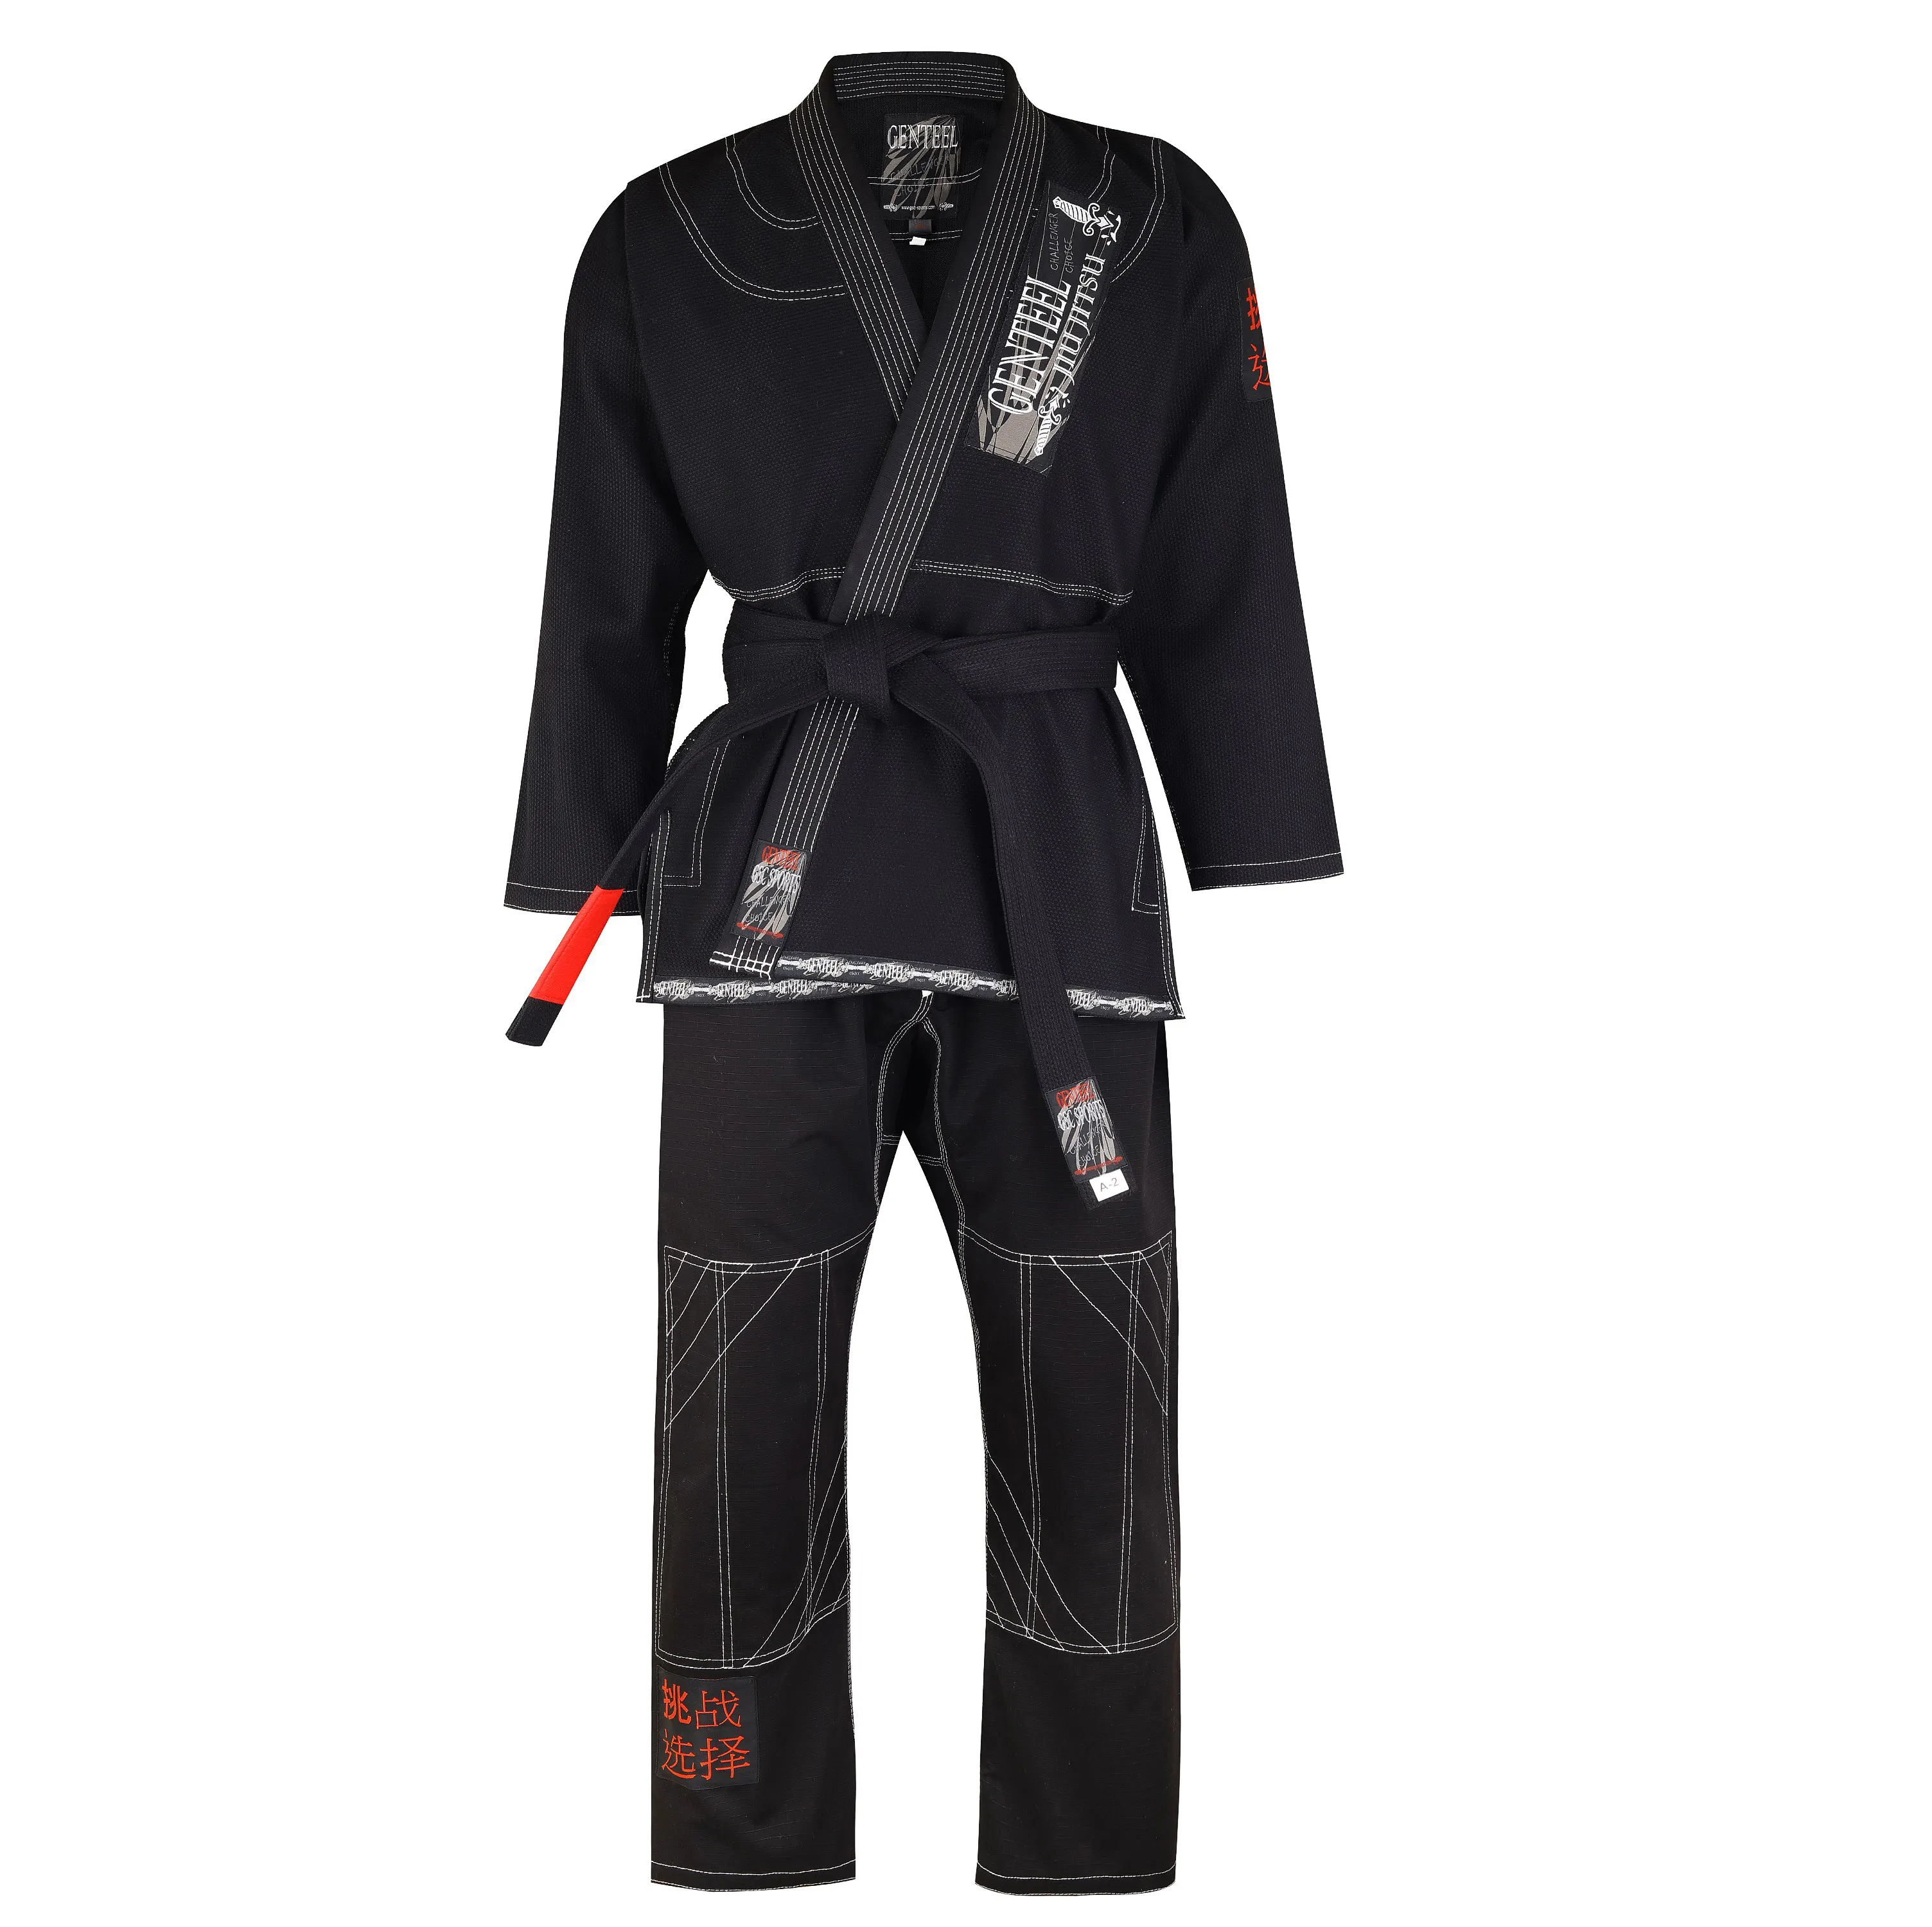 Schwarzes brasilia nisches Jiu Jitsu Uniform Premium Marke Genteel BJJ GI hochwertiges Material aus 100% Baumwolle mit attraktivem Custom Design